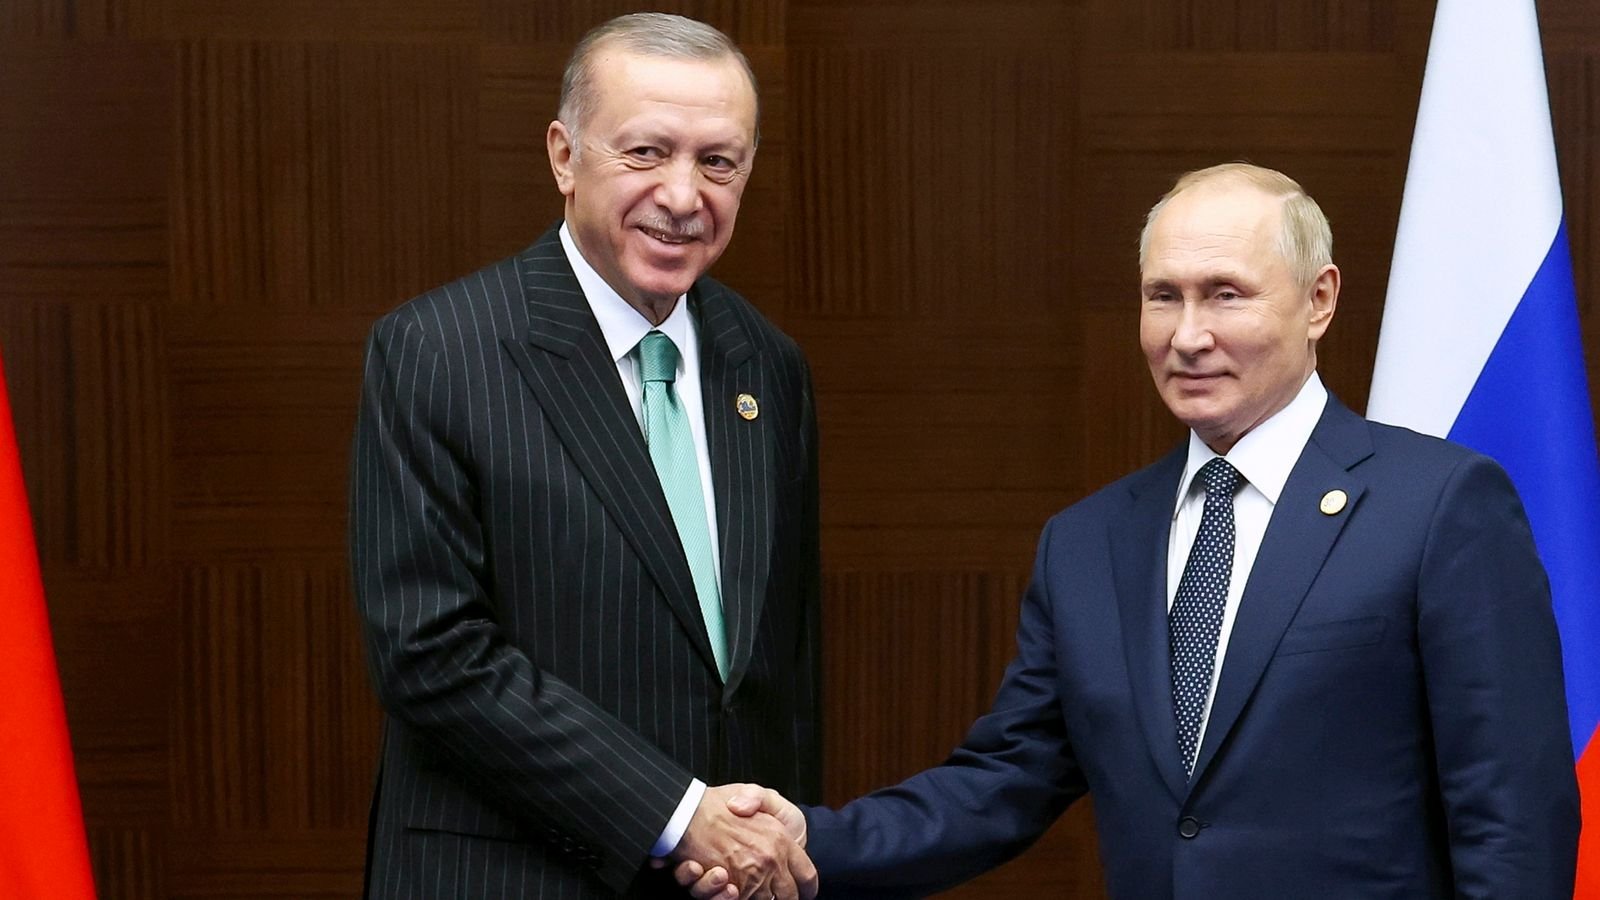 Ինչո՞ւ Թուրքիան Ուկրաինային վերադարձրեց «Ազովի» հրամանատարներին. ինչպիսի՞ փոփոխություններ տեղի կունենան Թուրքիա-ՌԴ հարաբերություններում